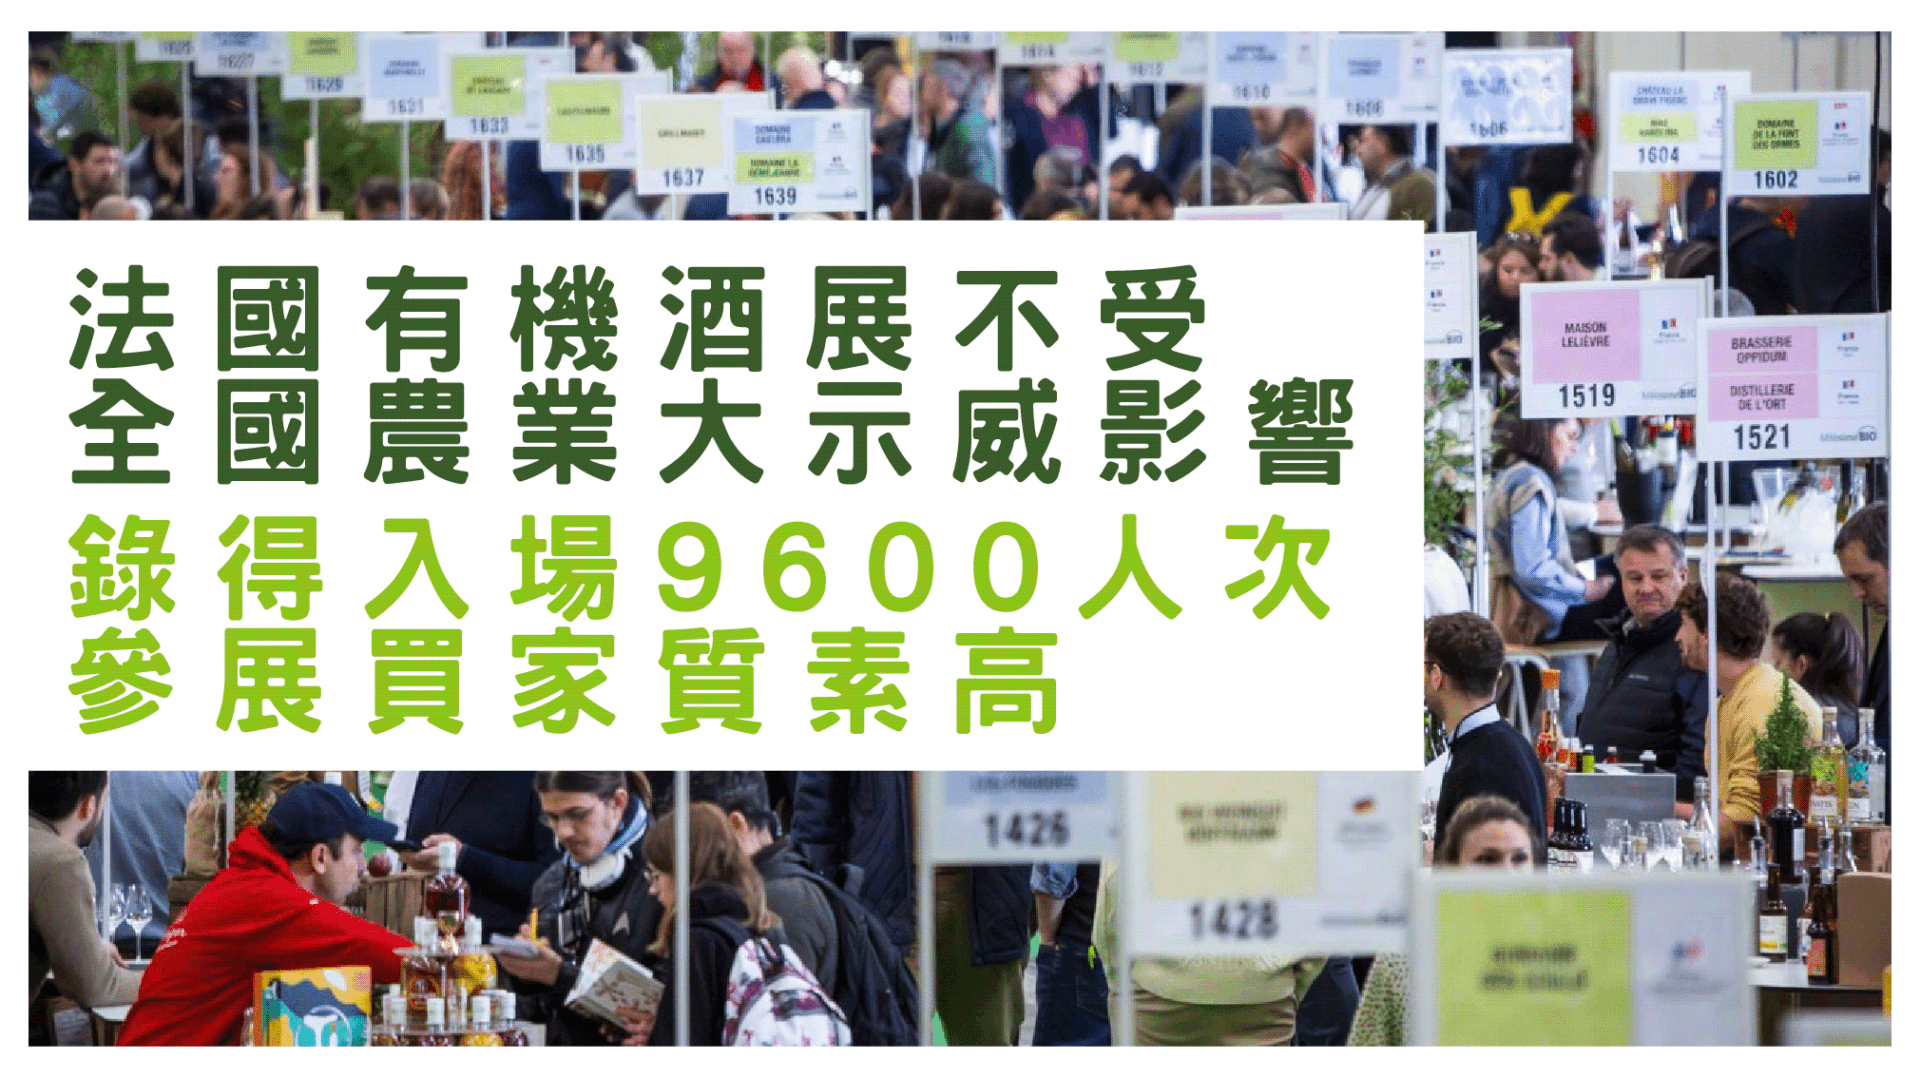 法國有機酒展不受全國農業大示威影響 錄得入場9600人次 參展買家質素高 - WineNow HK 專欄文章